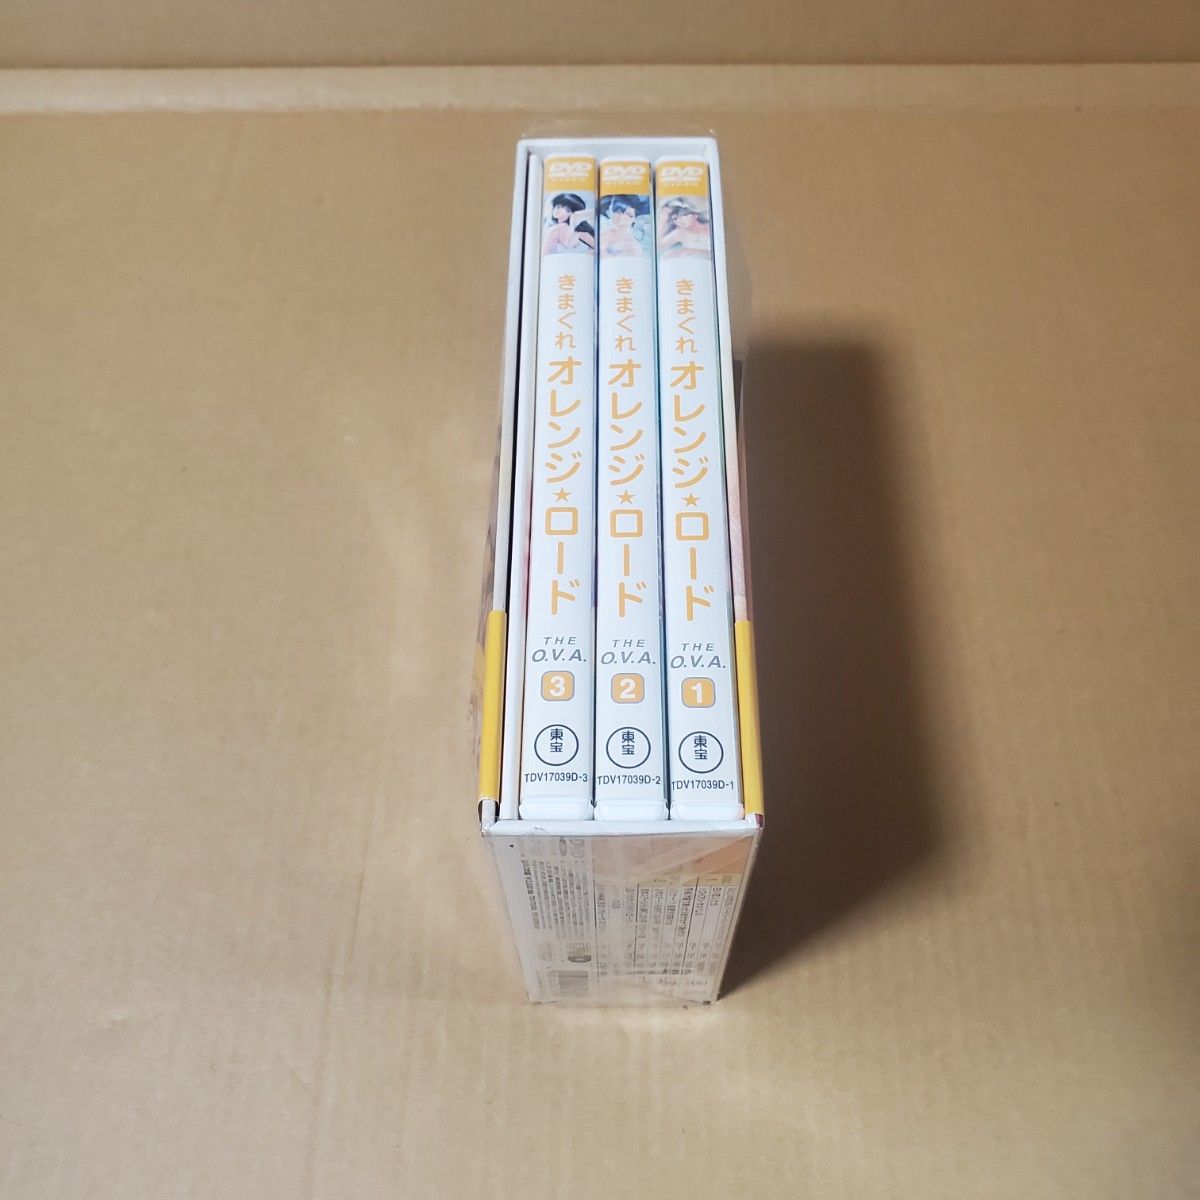 きまぐれオレンジ☆ロード The O.V.A. オリジナル・ビデオ・アニメーション 中古DVD-BOX